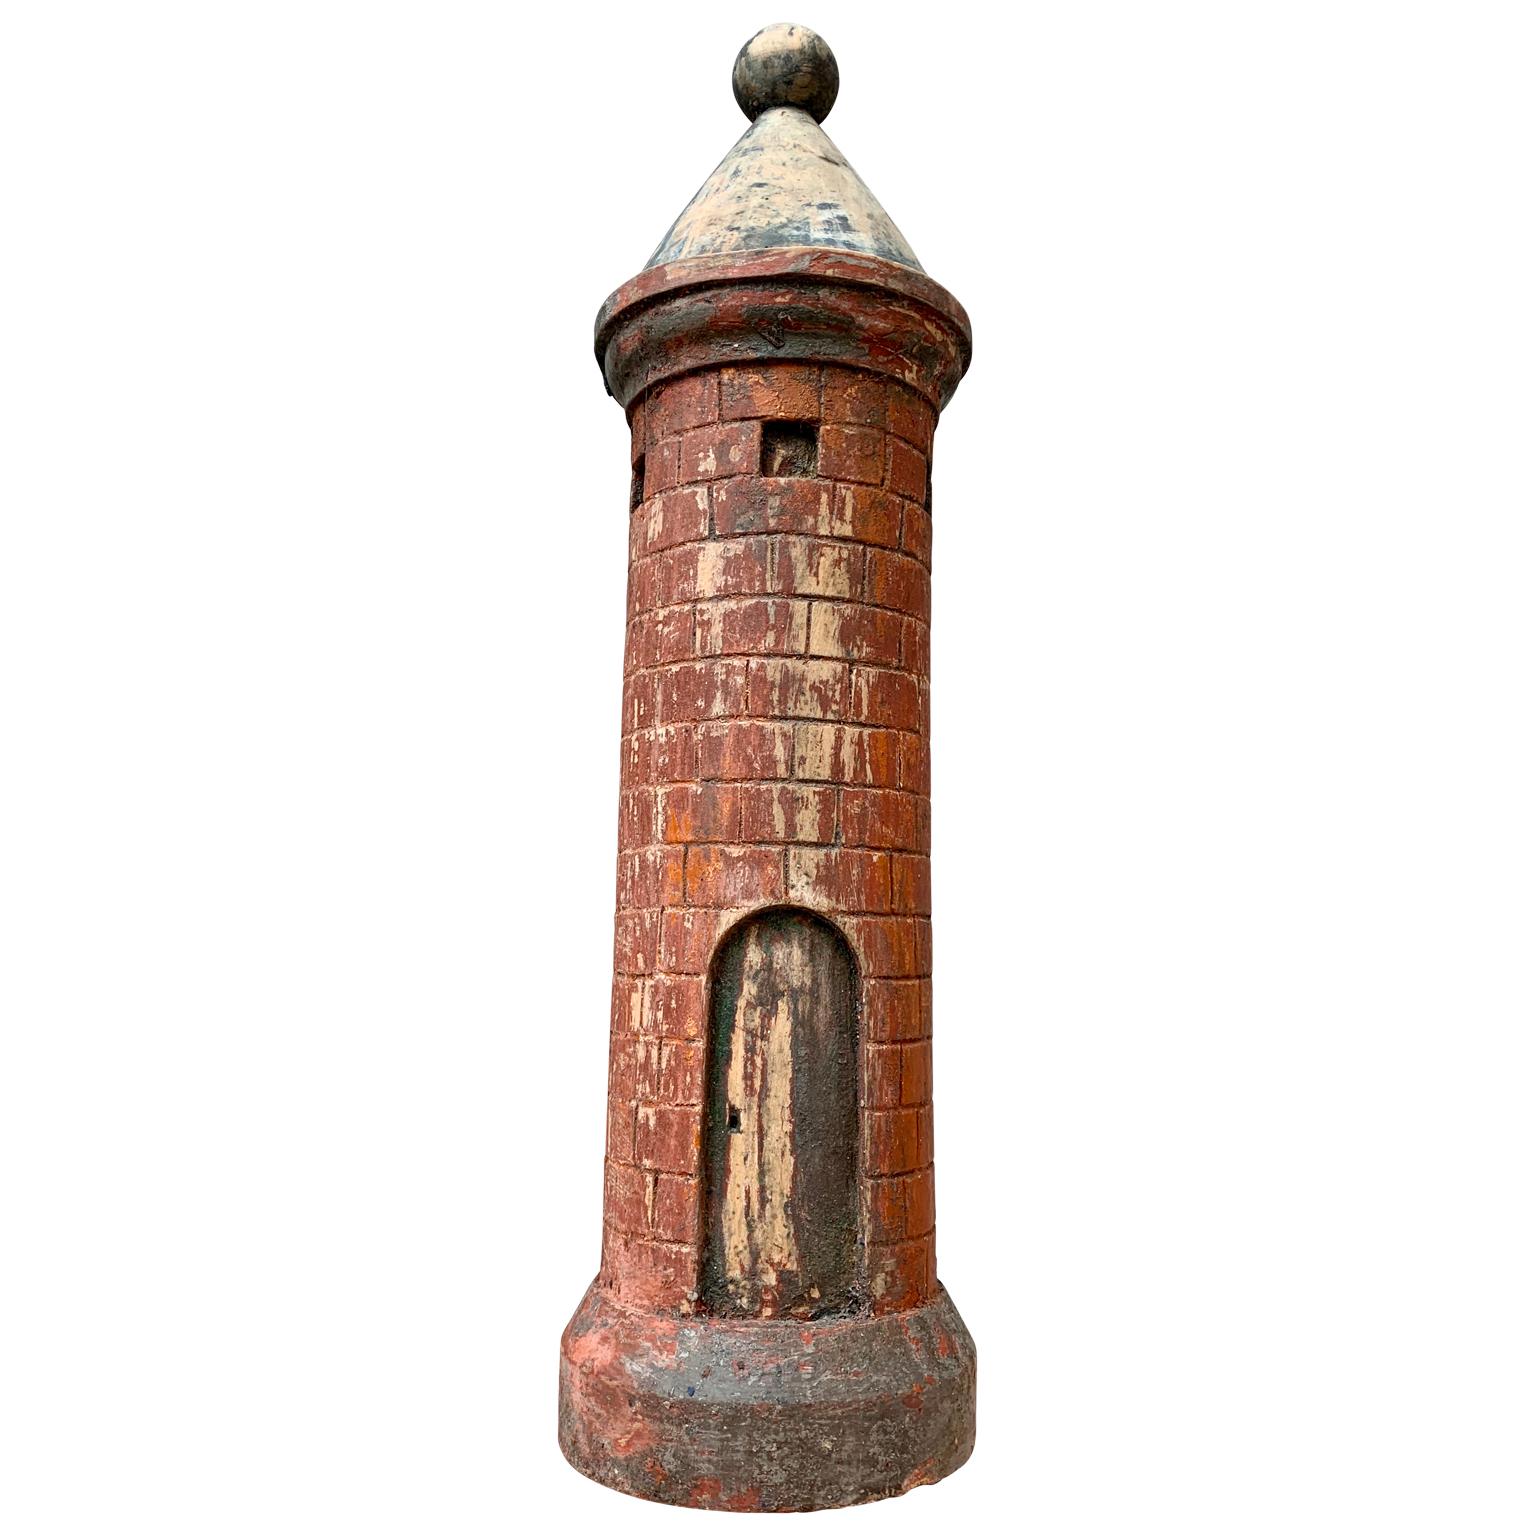 Eine aus dem frühen 19. Jahrhundert stammende handgeschnitzte und bemalte Skulptur eines mittelalterlichen Turms aus Holz.